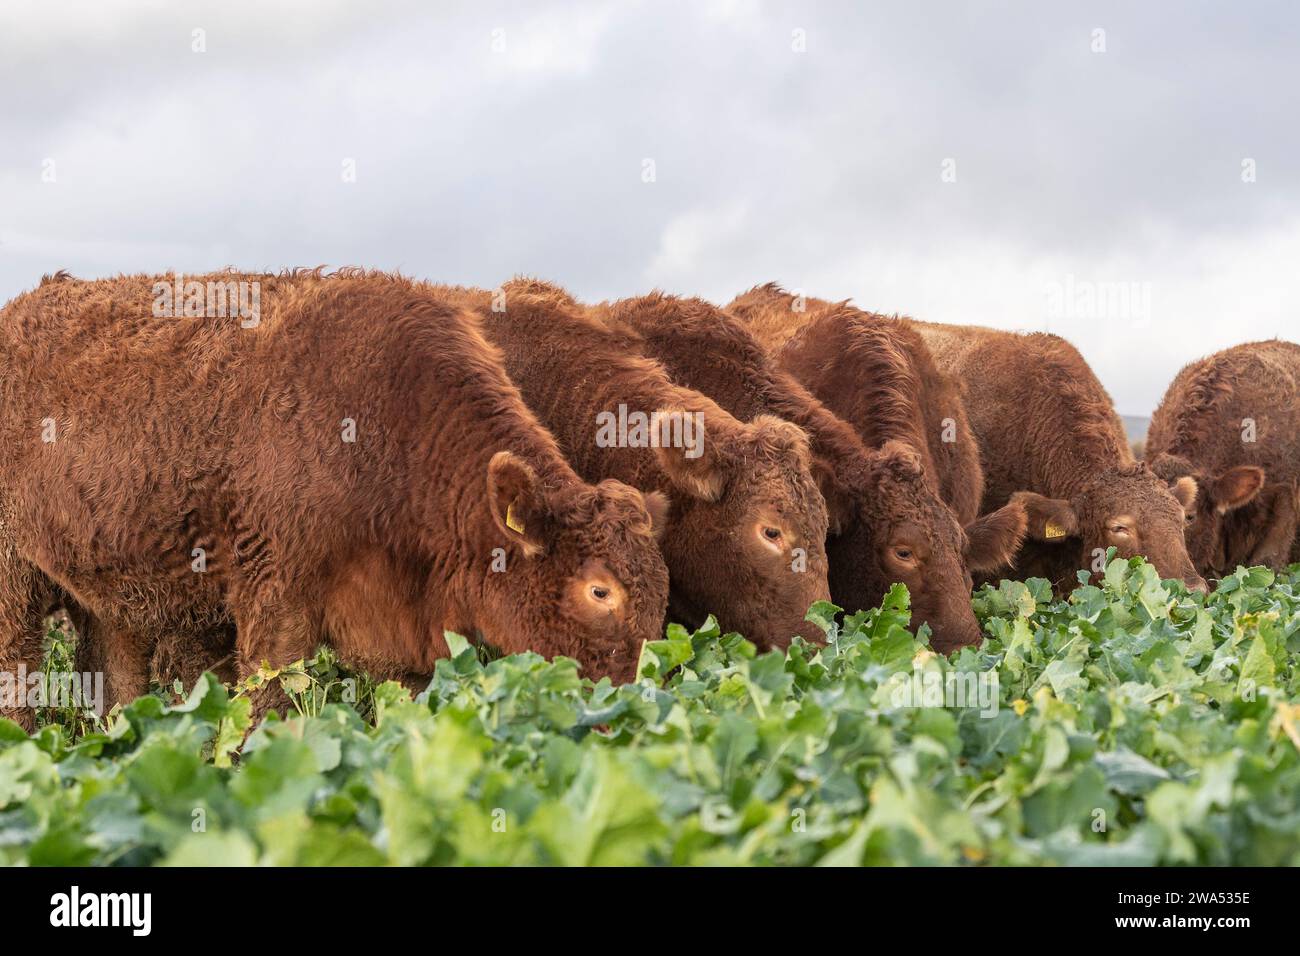 South Devon Cows grazing kale Stock Photo